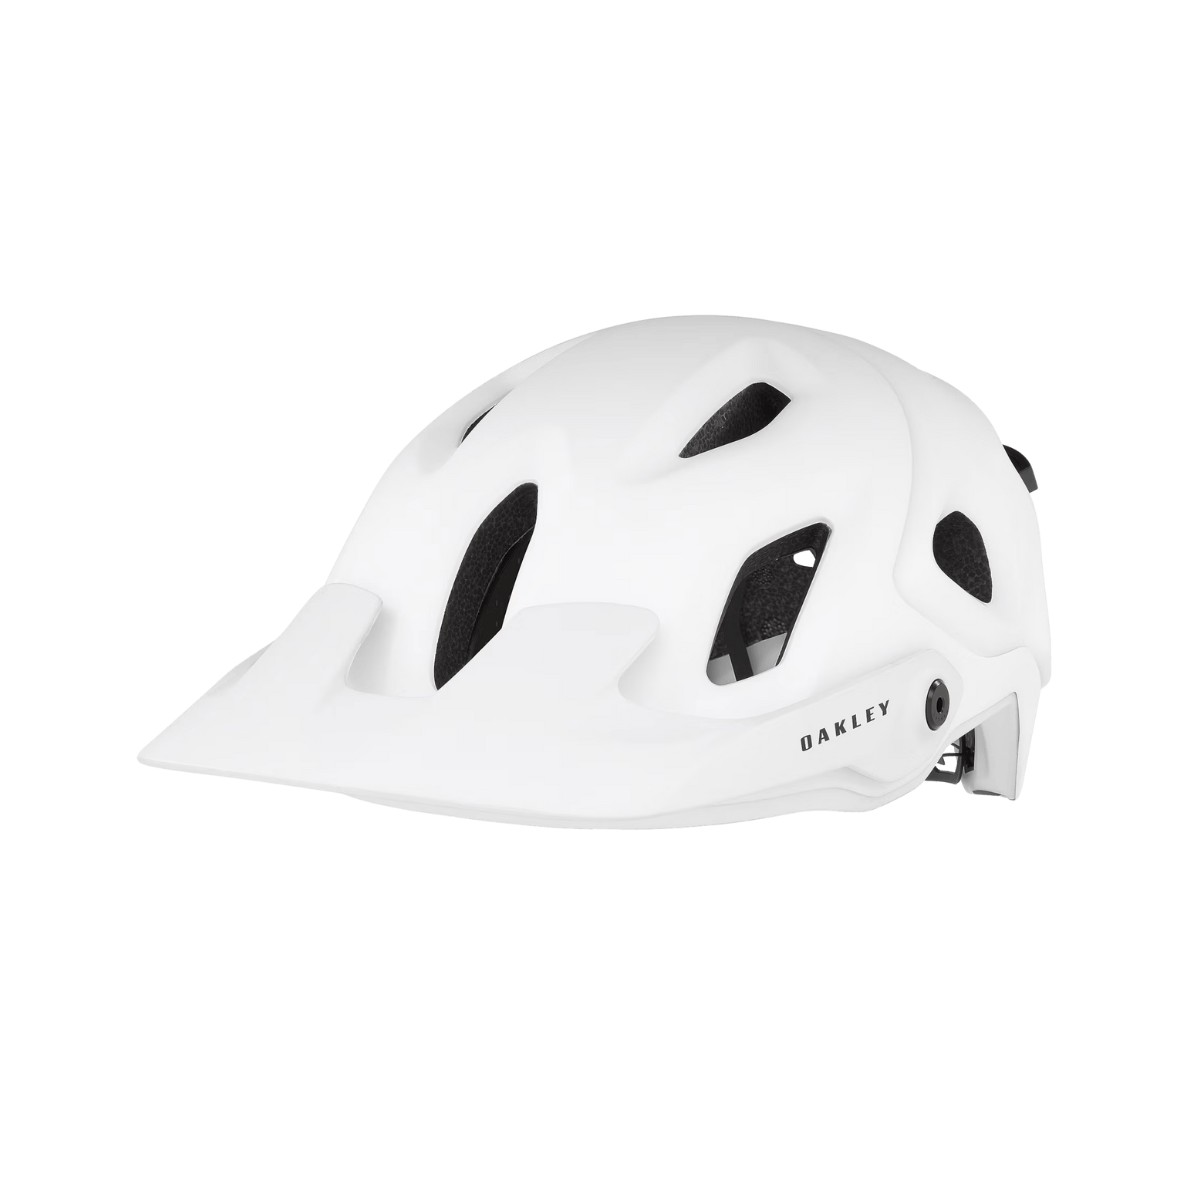 Oakley DRT5 Mips Weißer Helm, Größe M (54-58 cm)